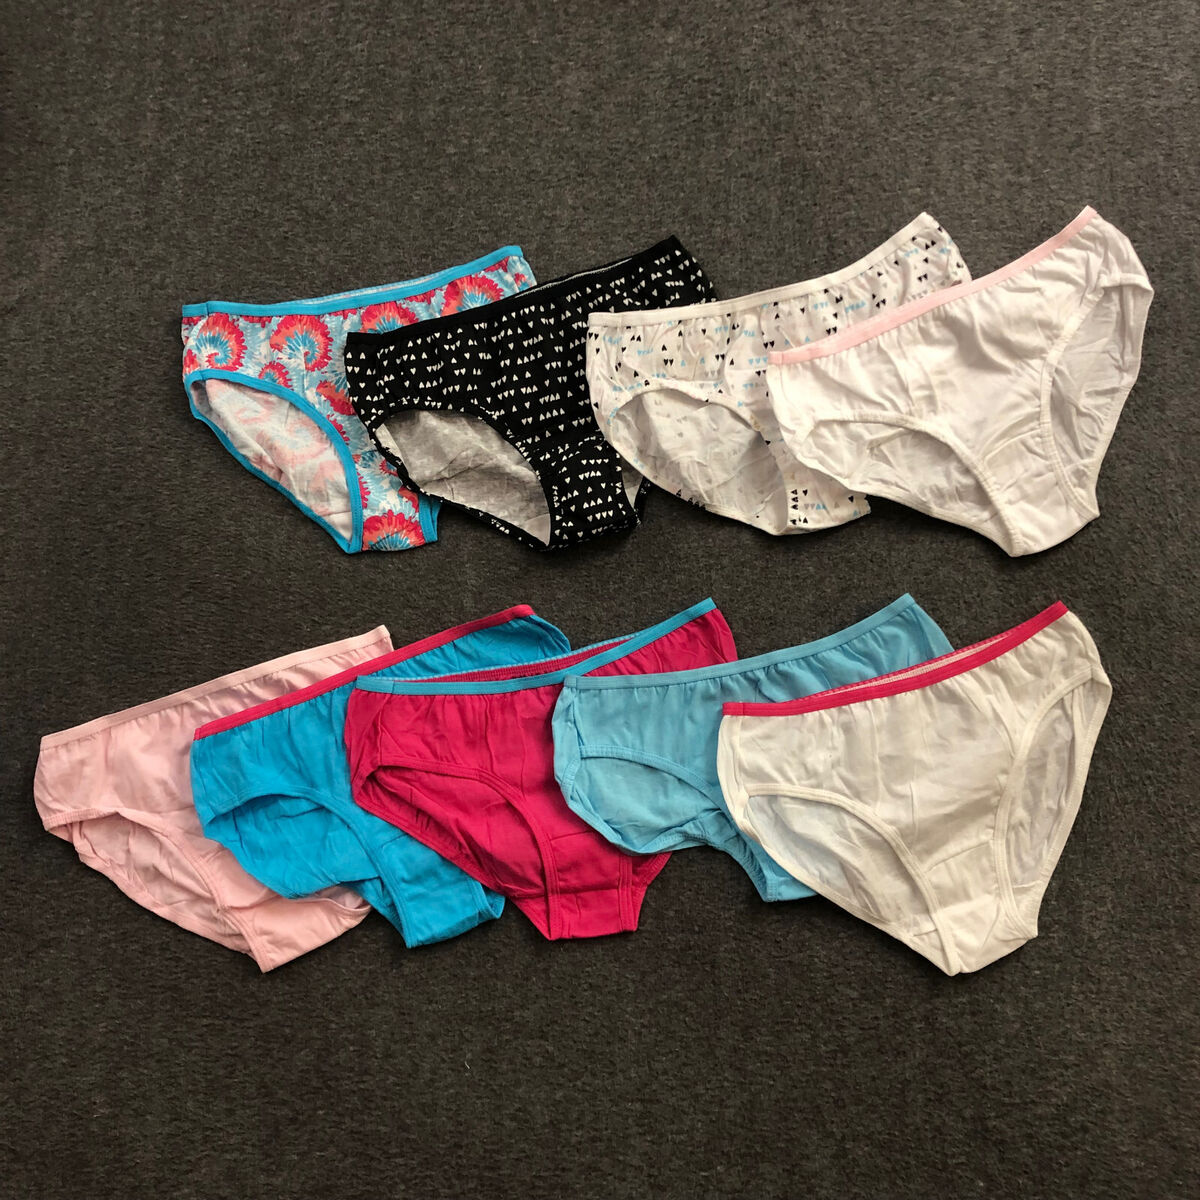 14-PACK Hanes Panties Girls Sz 6 Assorted Underwear 100% Cotton